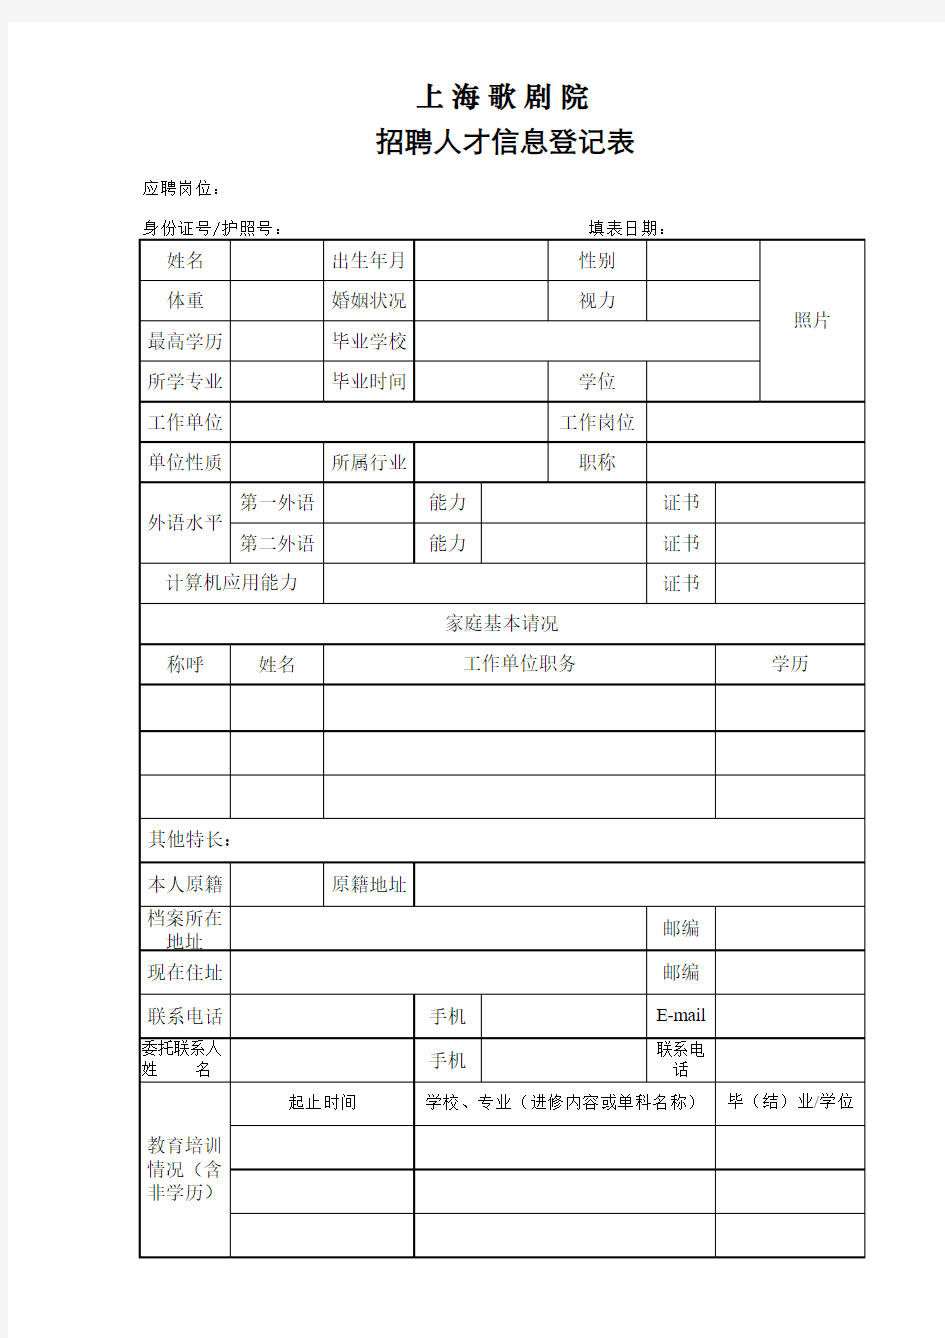 (声乐演员)上海歌剧院招聘人才信息登记表xls